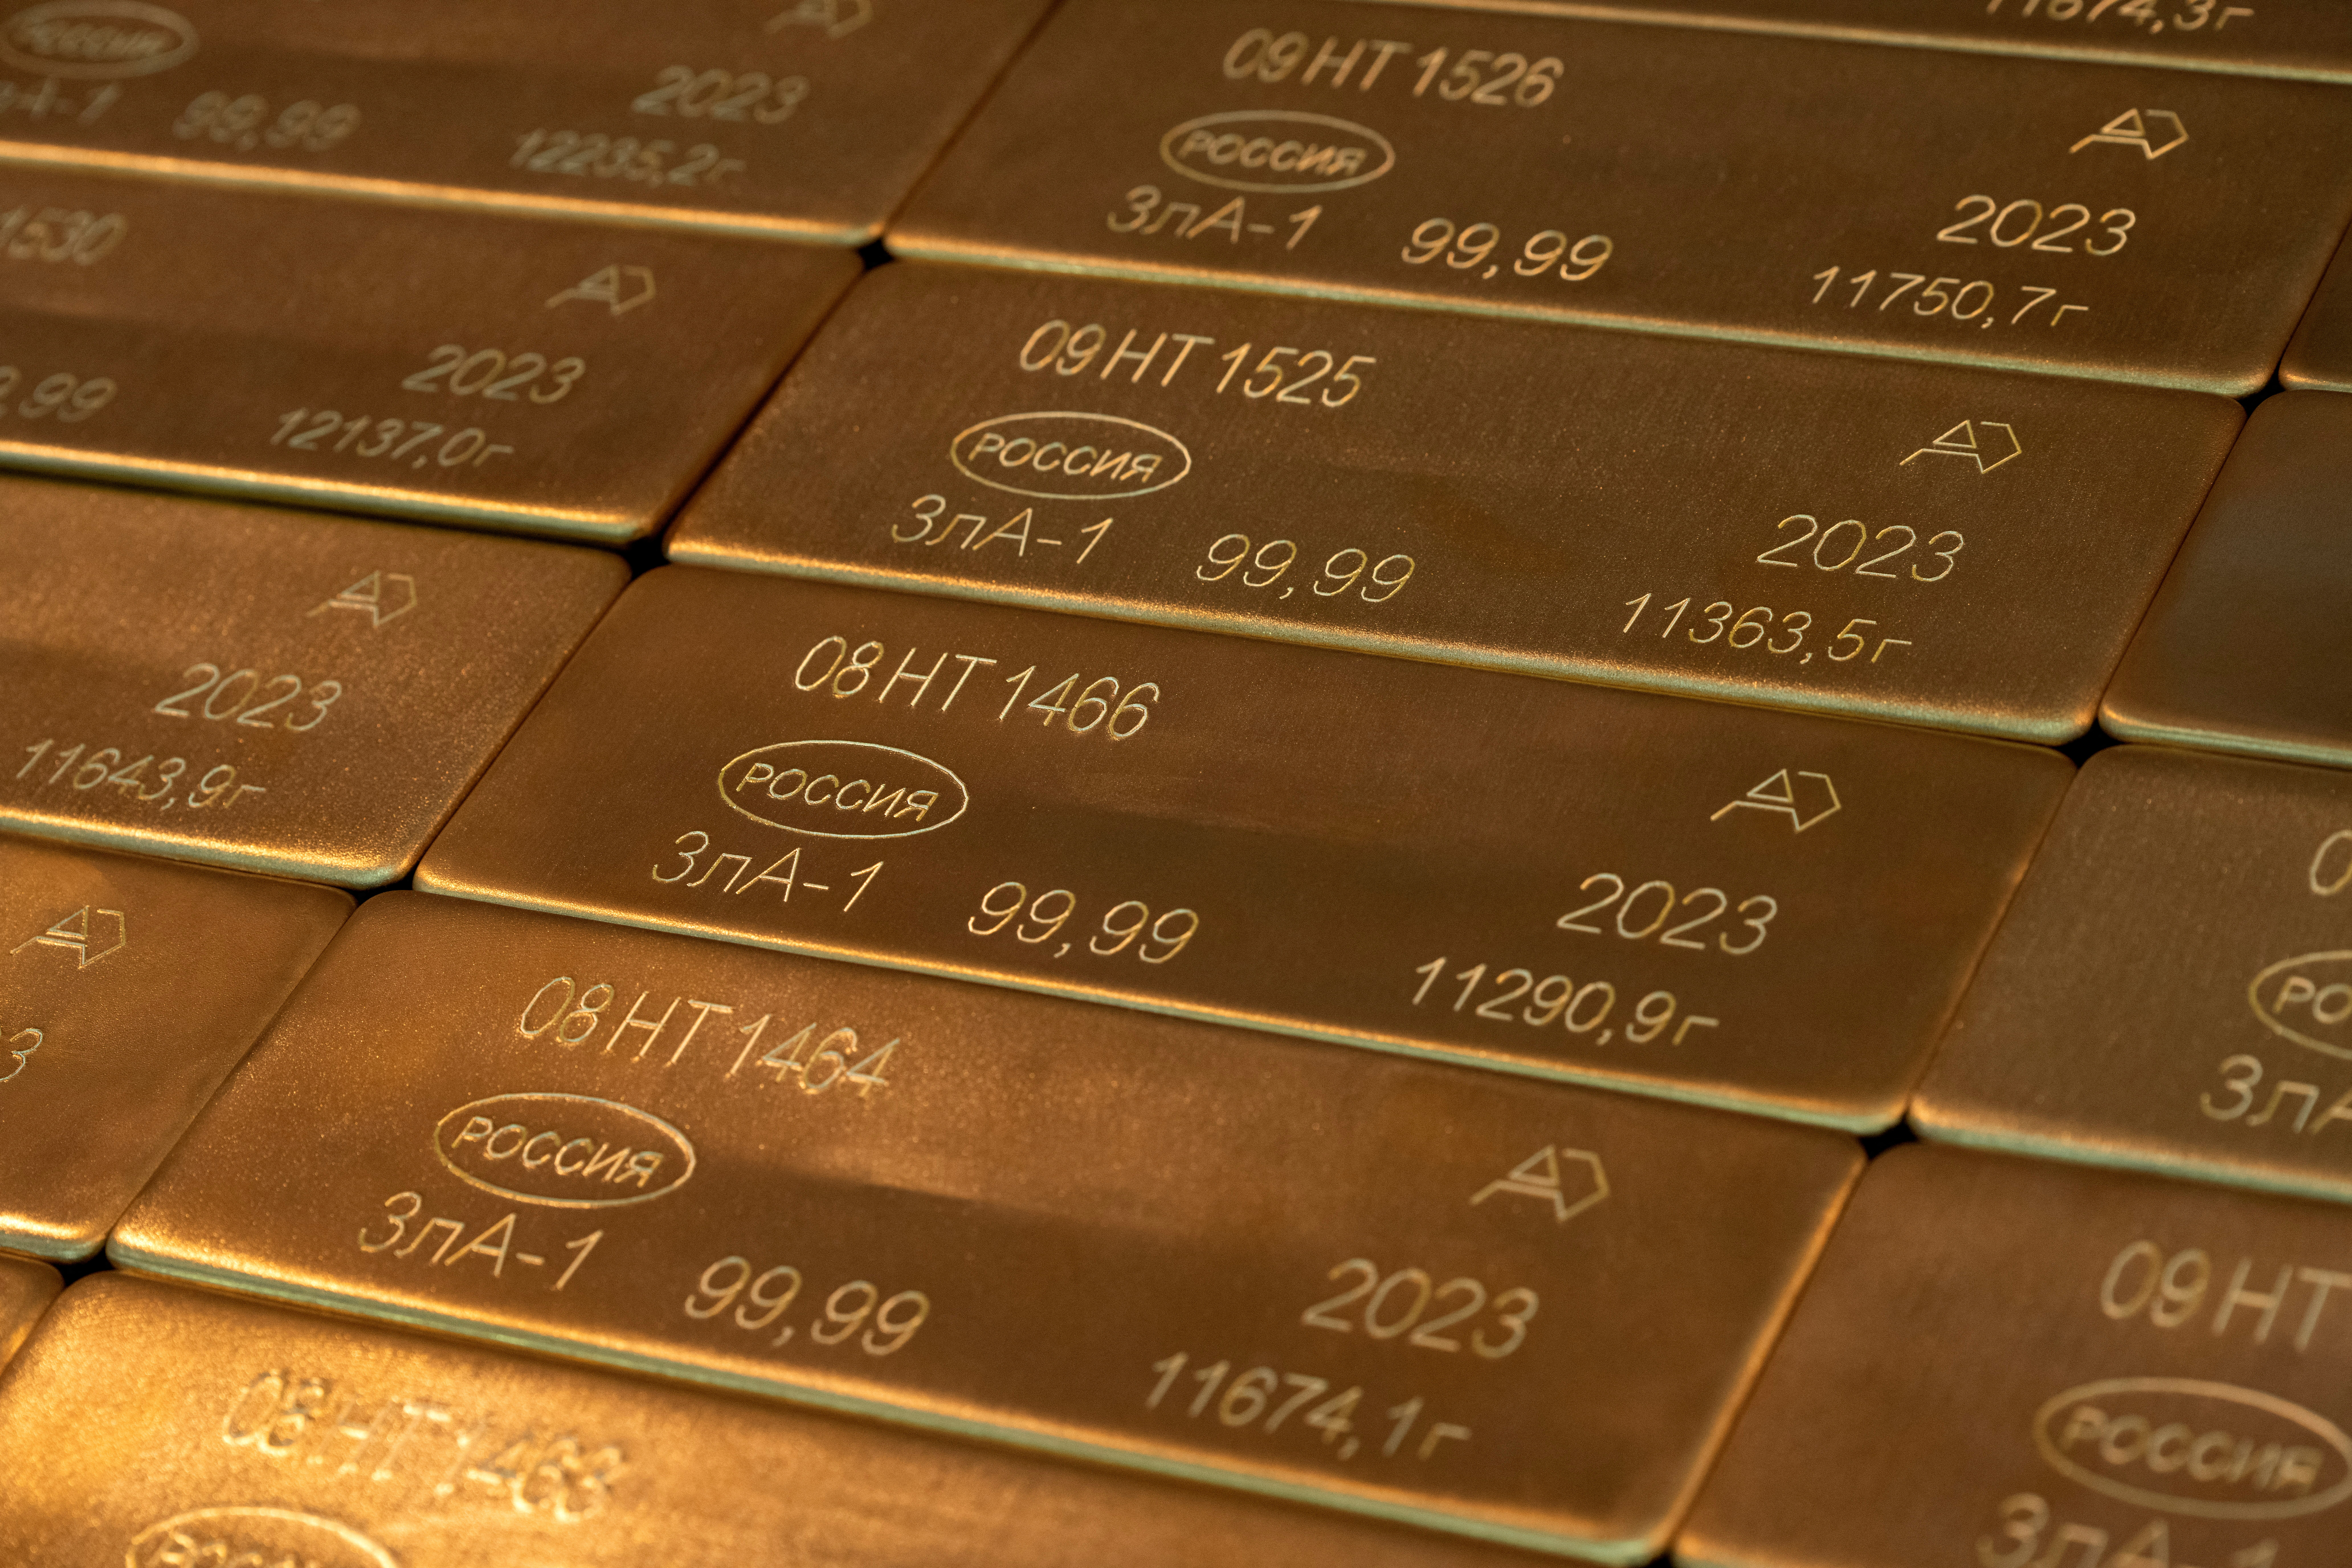 ทองคำพุ่งขึ้นสูงสุดเป็นประวัติการณ์จากโมเมนตัมอัตราดอกเบี้ยสหรัฐ